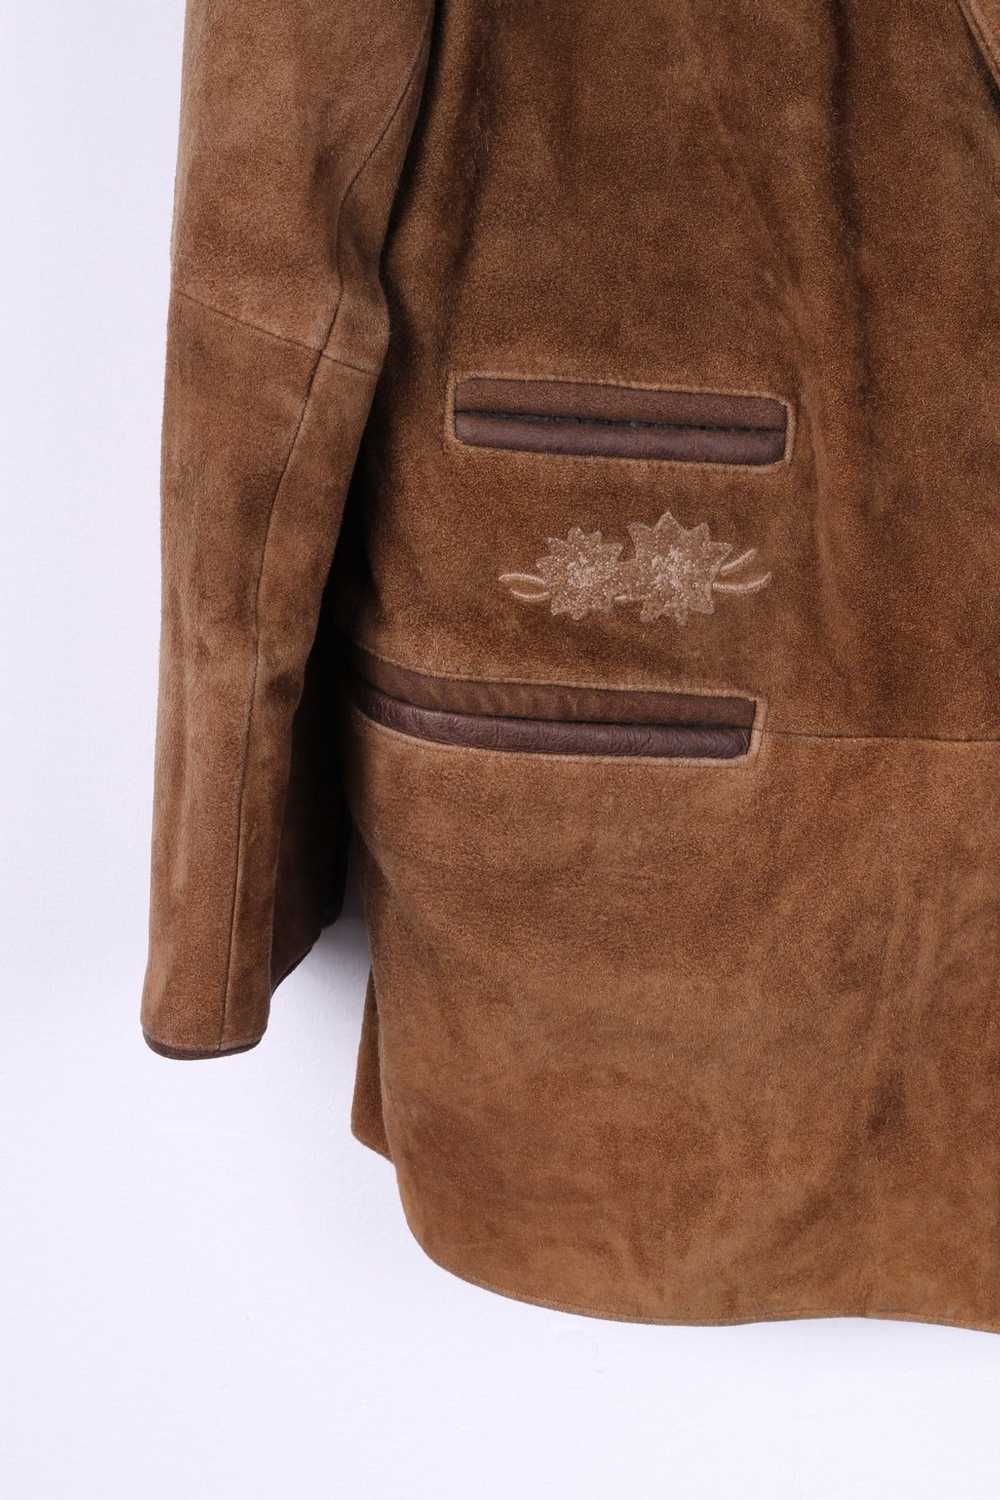 C&A Canada C&A Men 44 54 L Blazer Vintage Leather… - image 2